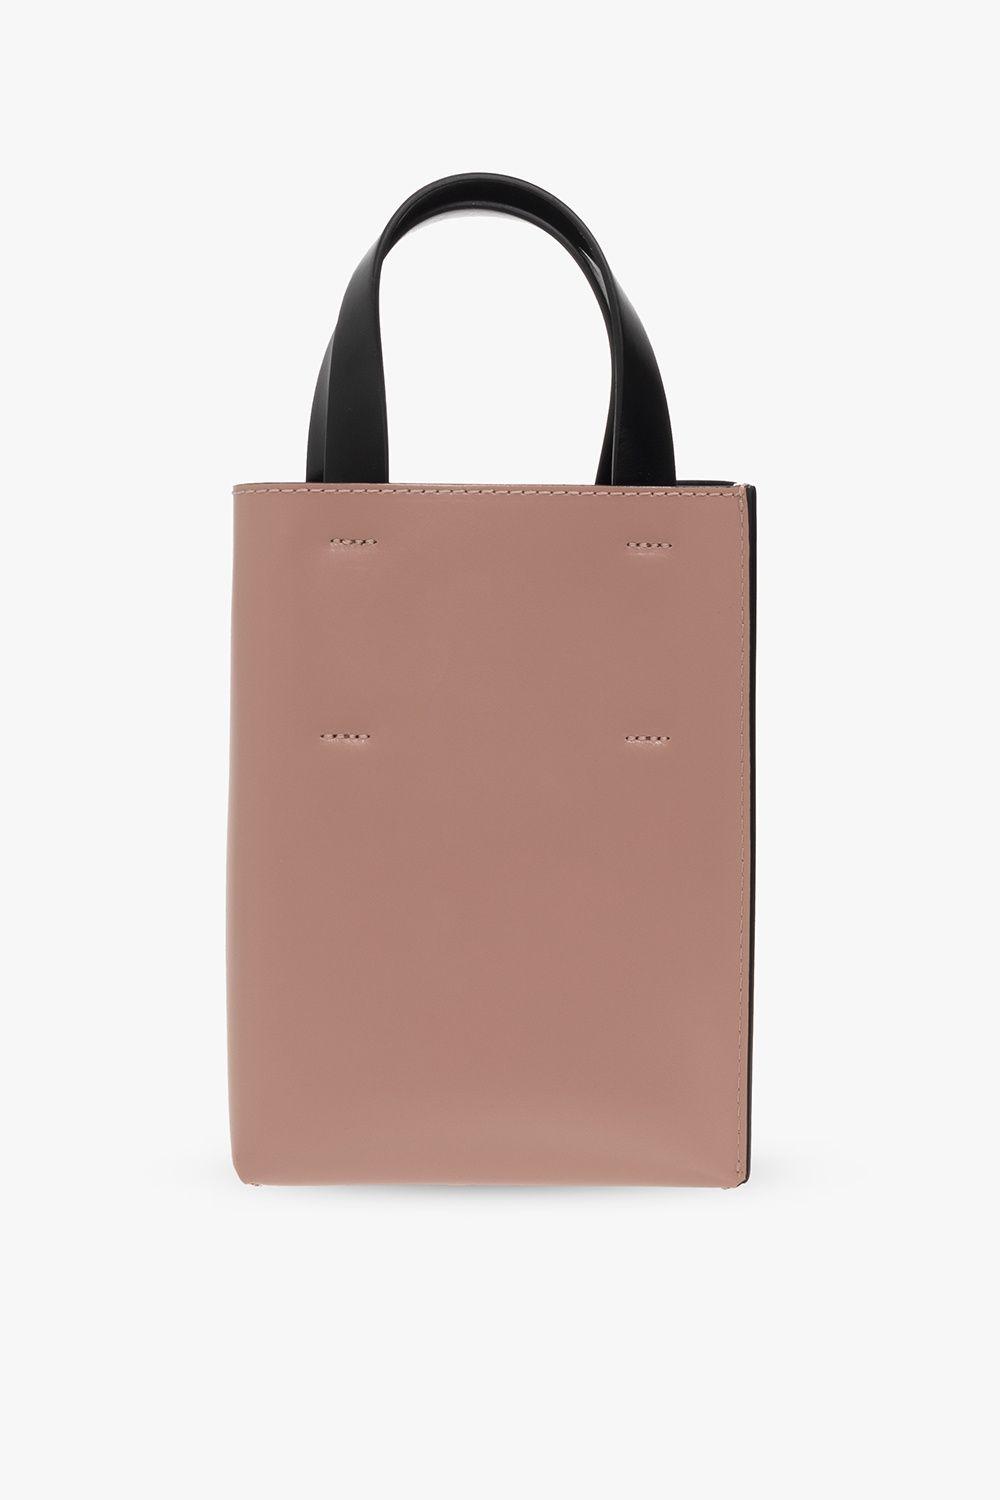 Marni, Bags, Marni Nano Museo Shopping Bag In Black Shiny Smooth Calfskin  With Shoulder Strap